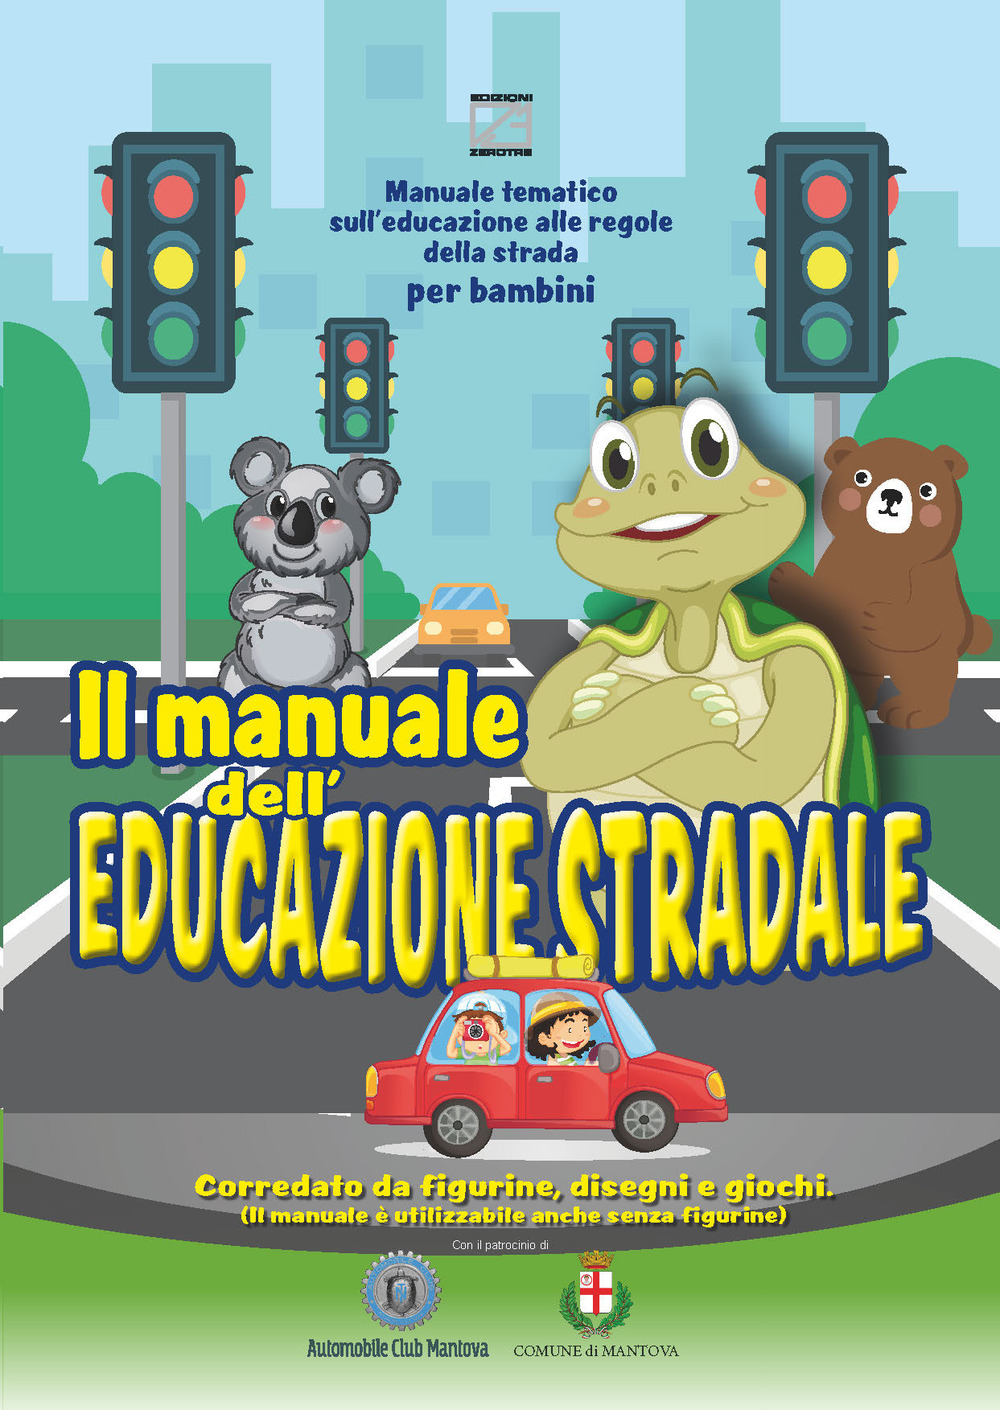 Image of Il manuale dell'educazione stradale. Manuale tematico sull'educazione alle regole della strada per bambini